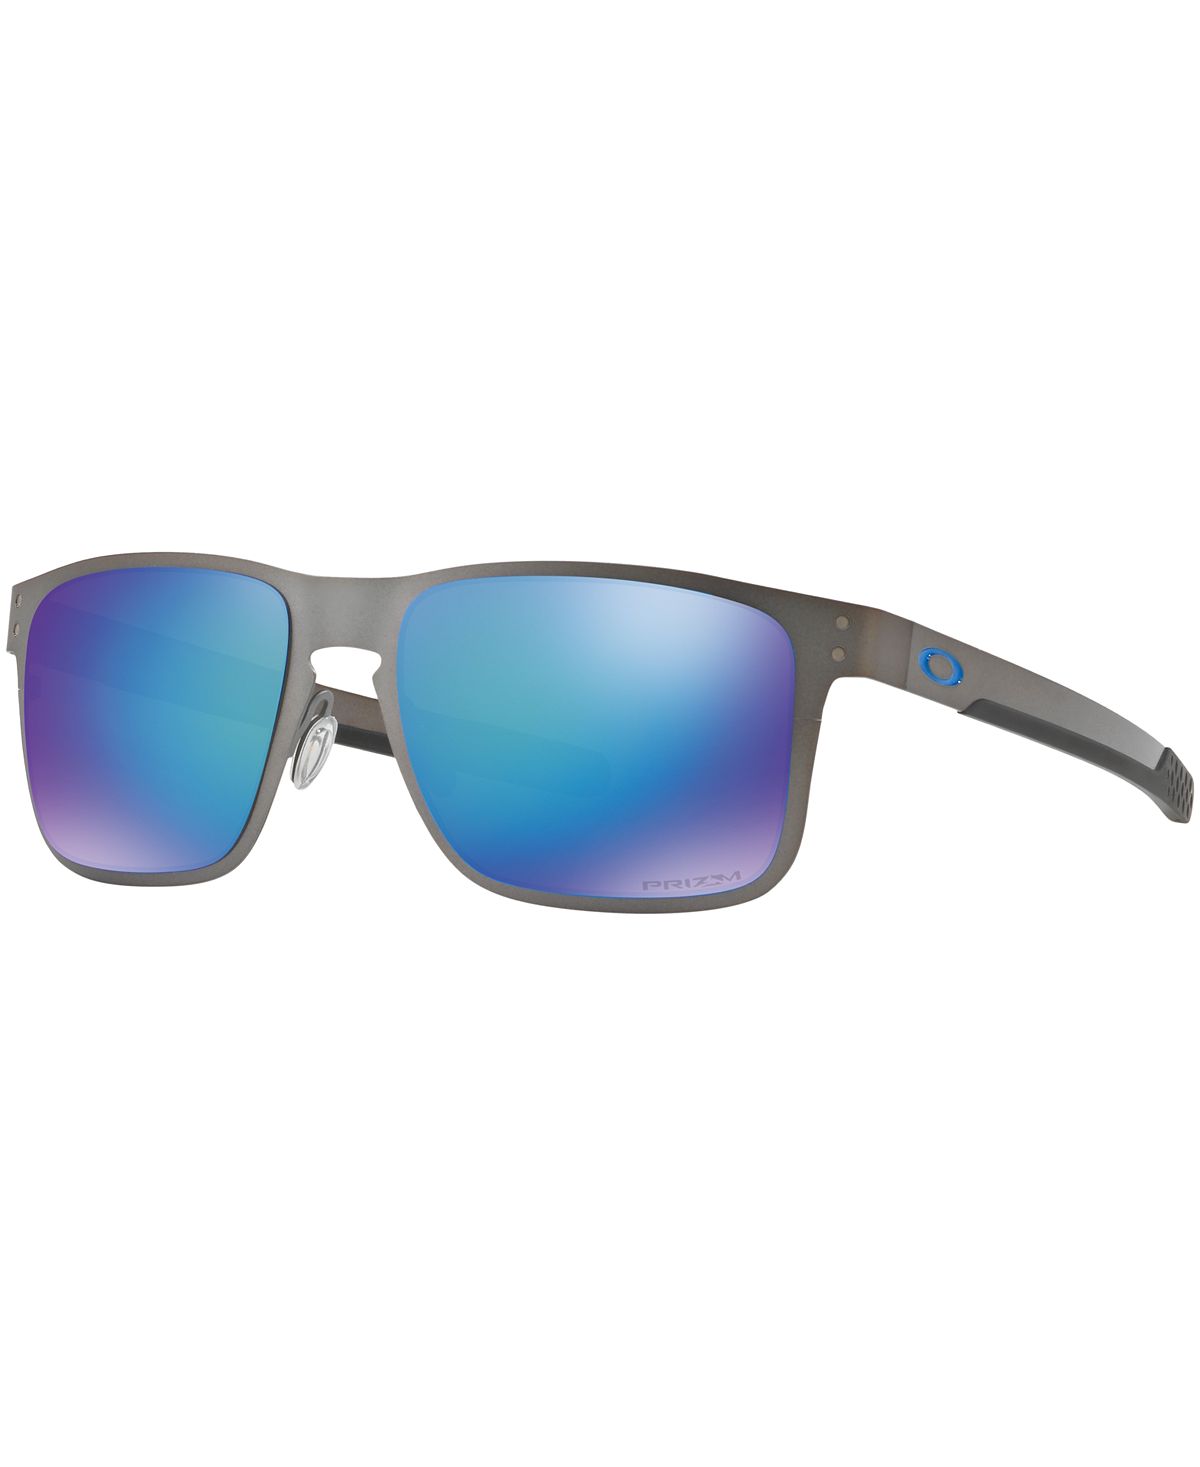 Поляризованные солнцезащитные очки Holbrook Metal Prizm с сапфировым стеклом, OO4123 55 Oakley